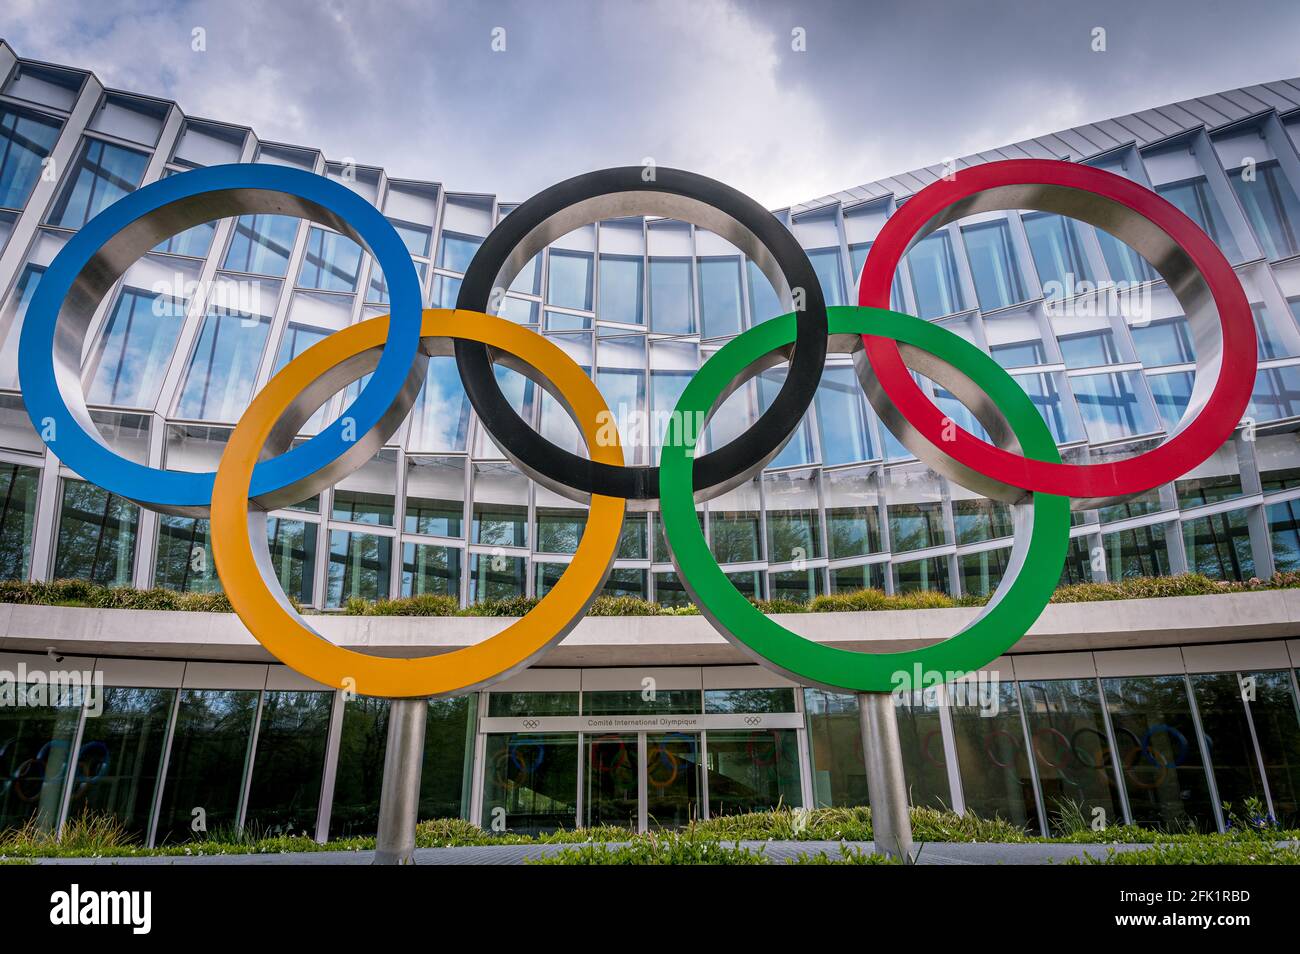 Losanna, Cantone di Vaud, Svizzera - 04.18.2021: Nuova sede del Comitato Olimpico Internazionale. Riferimento anatomico. Foto Stock